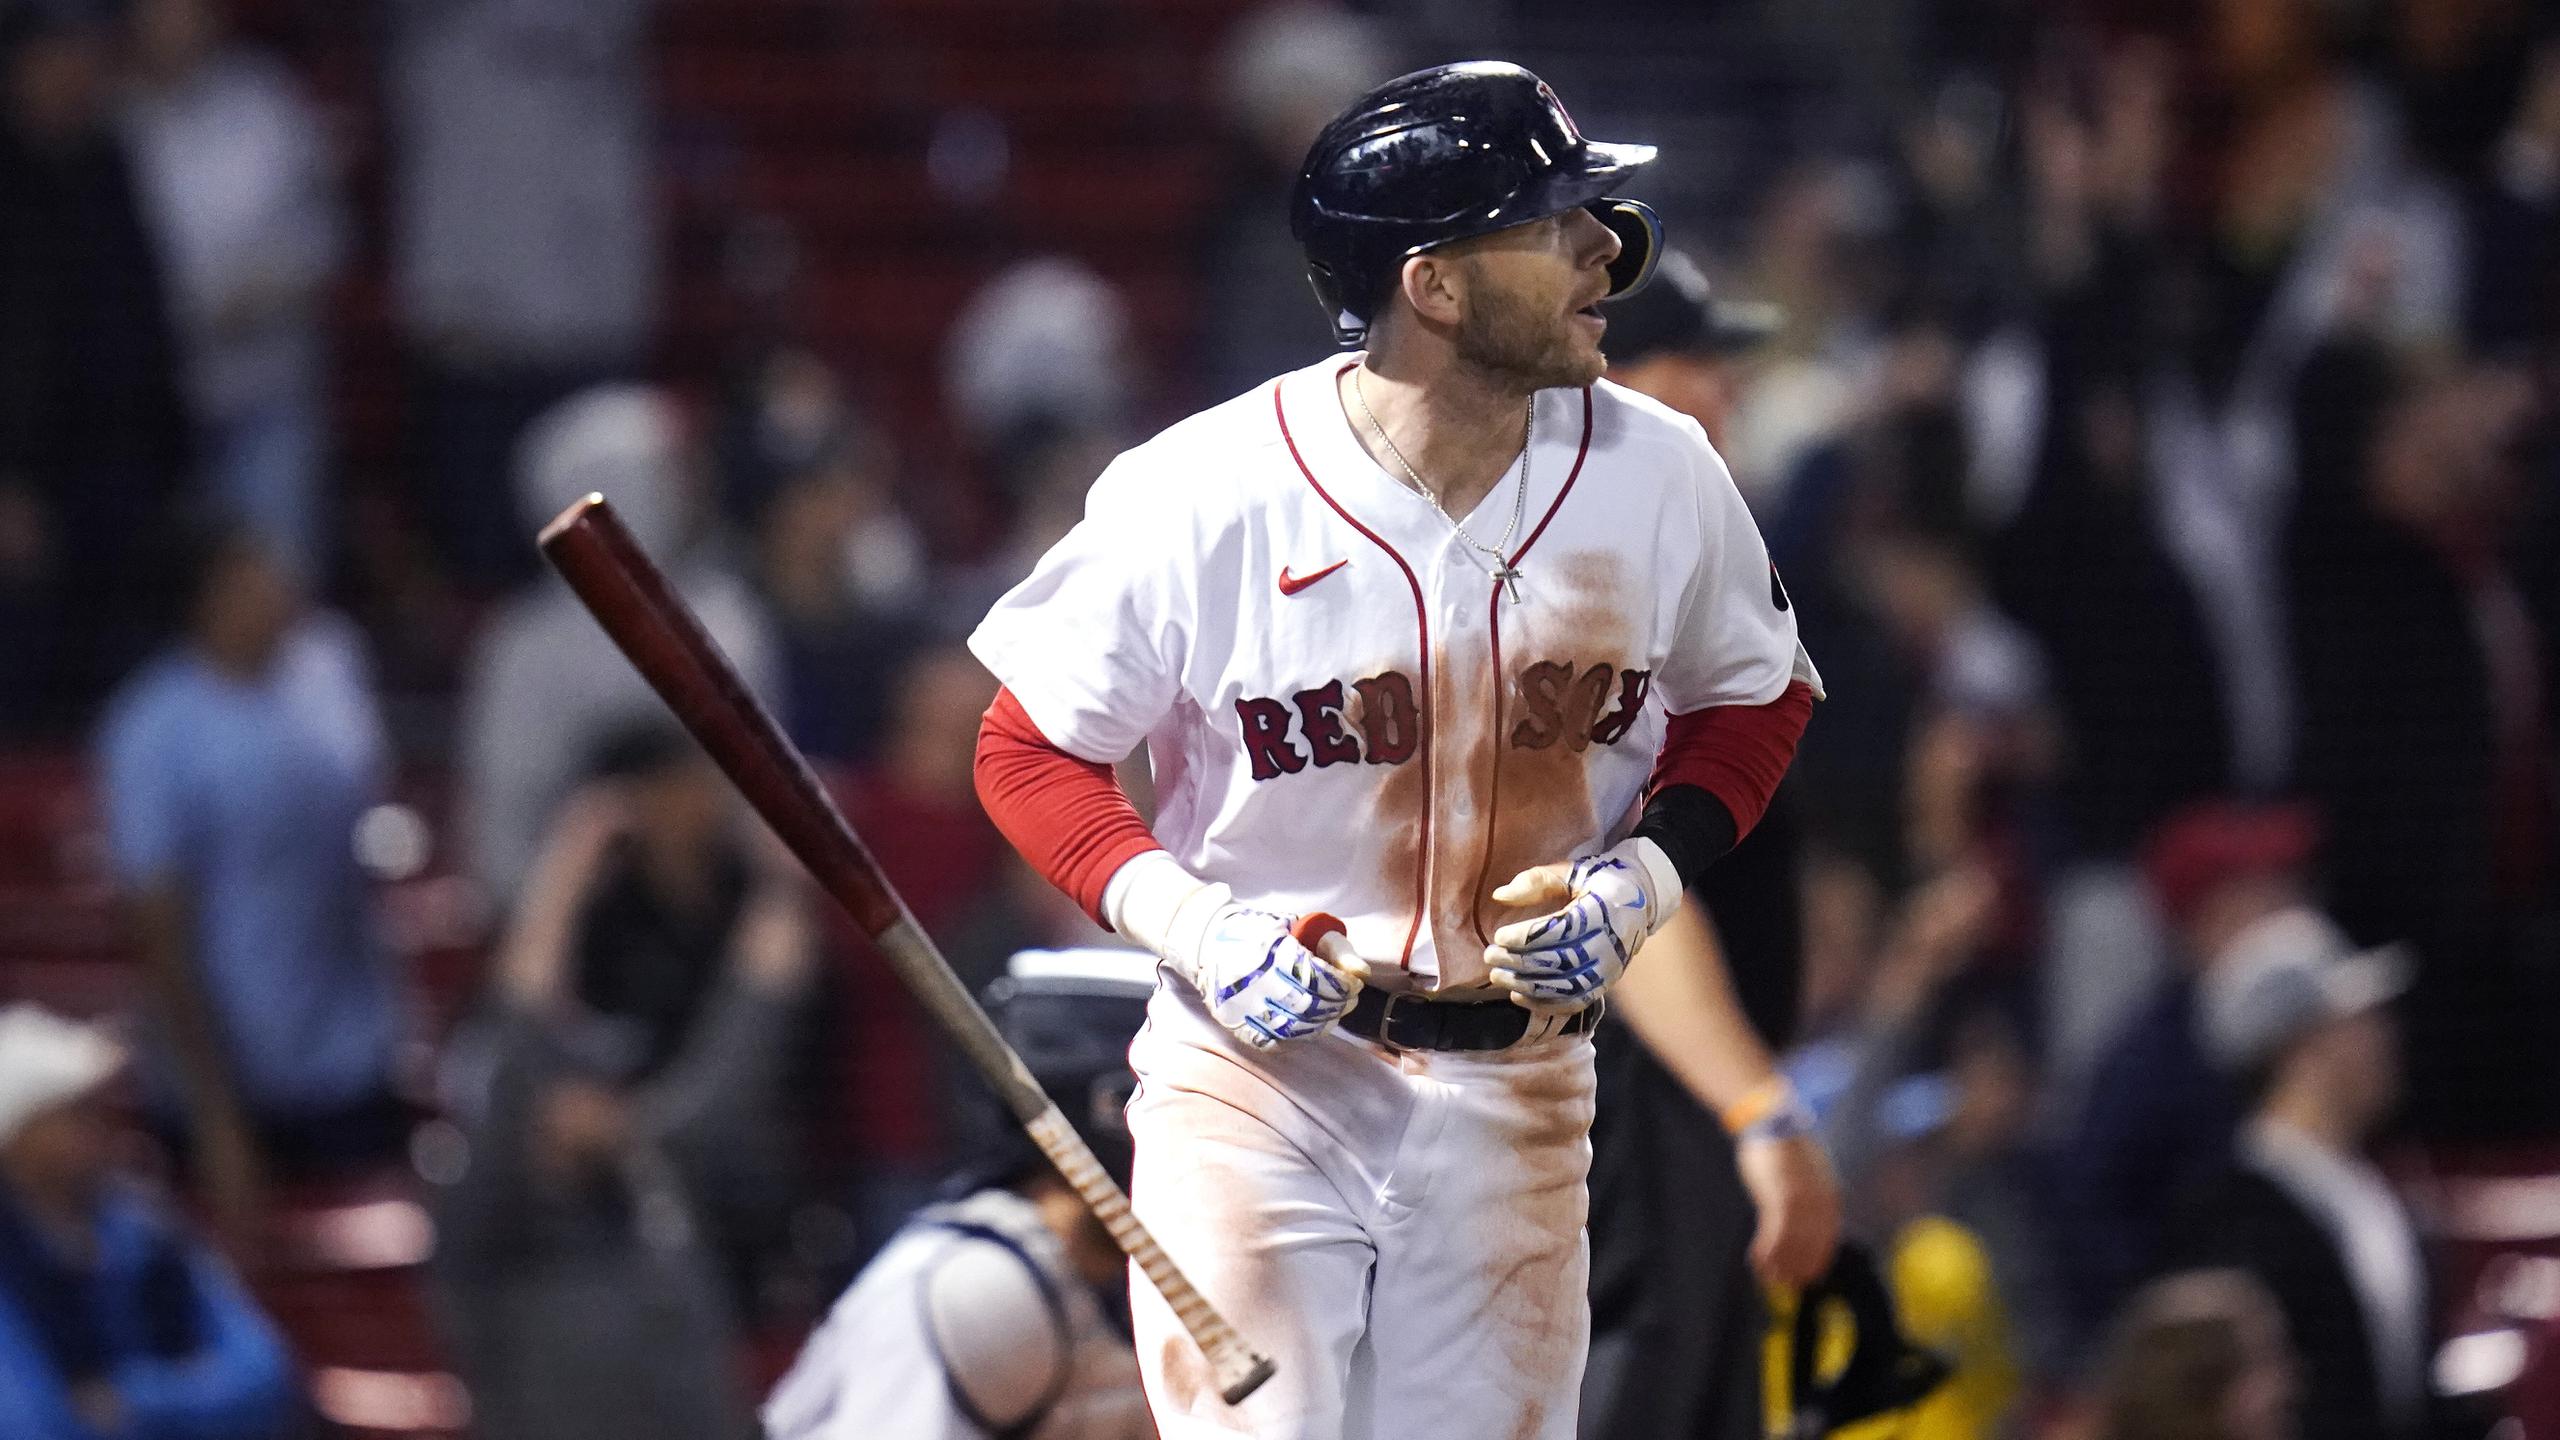 Trevor Story, de los Red Sox de Boston, lanza su bate al conectar un jonrón de tres carreras frente a los Mariners de Seattle el jueves.